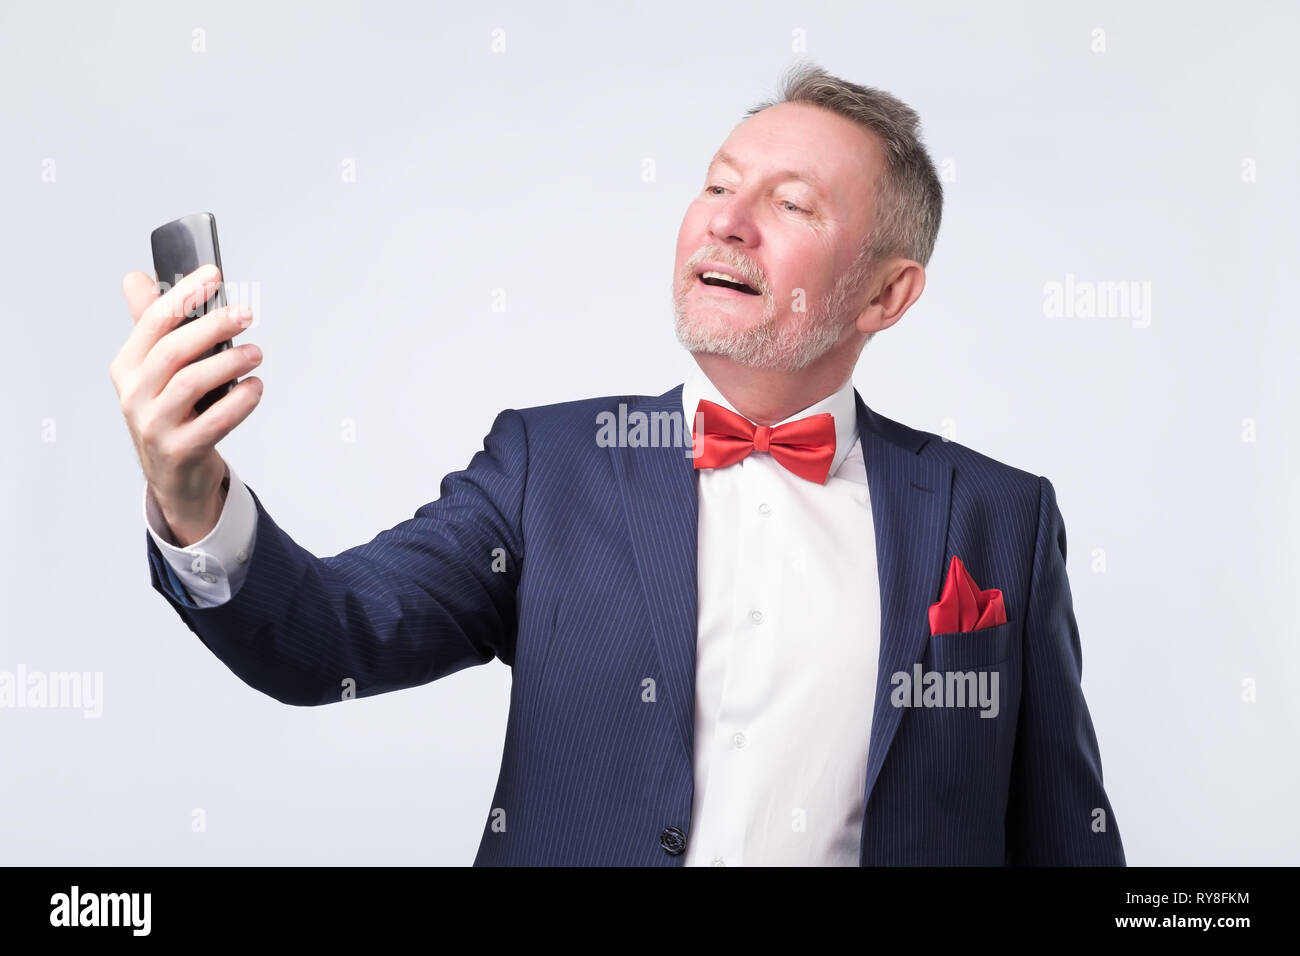 Man au costume bleu à écran de téléphone intelligent, souriant gentiment Banque D'Images